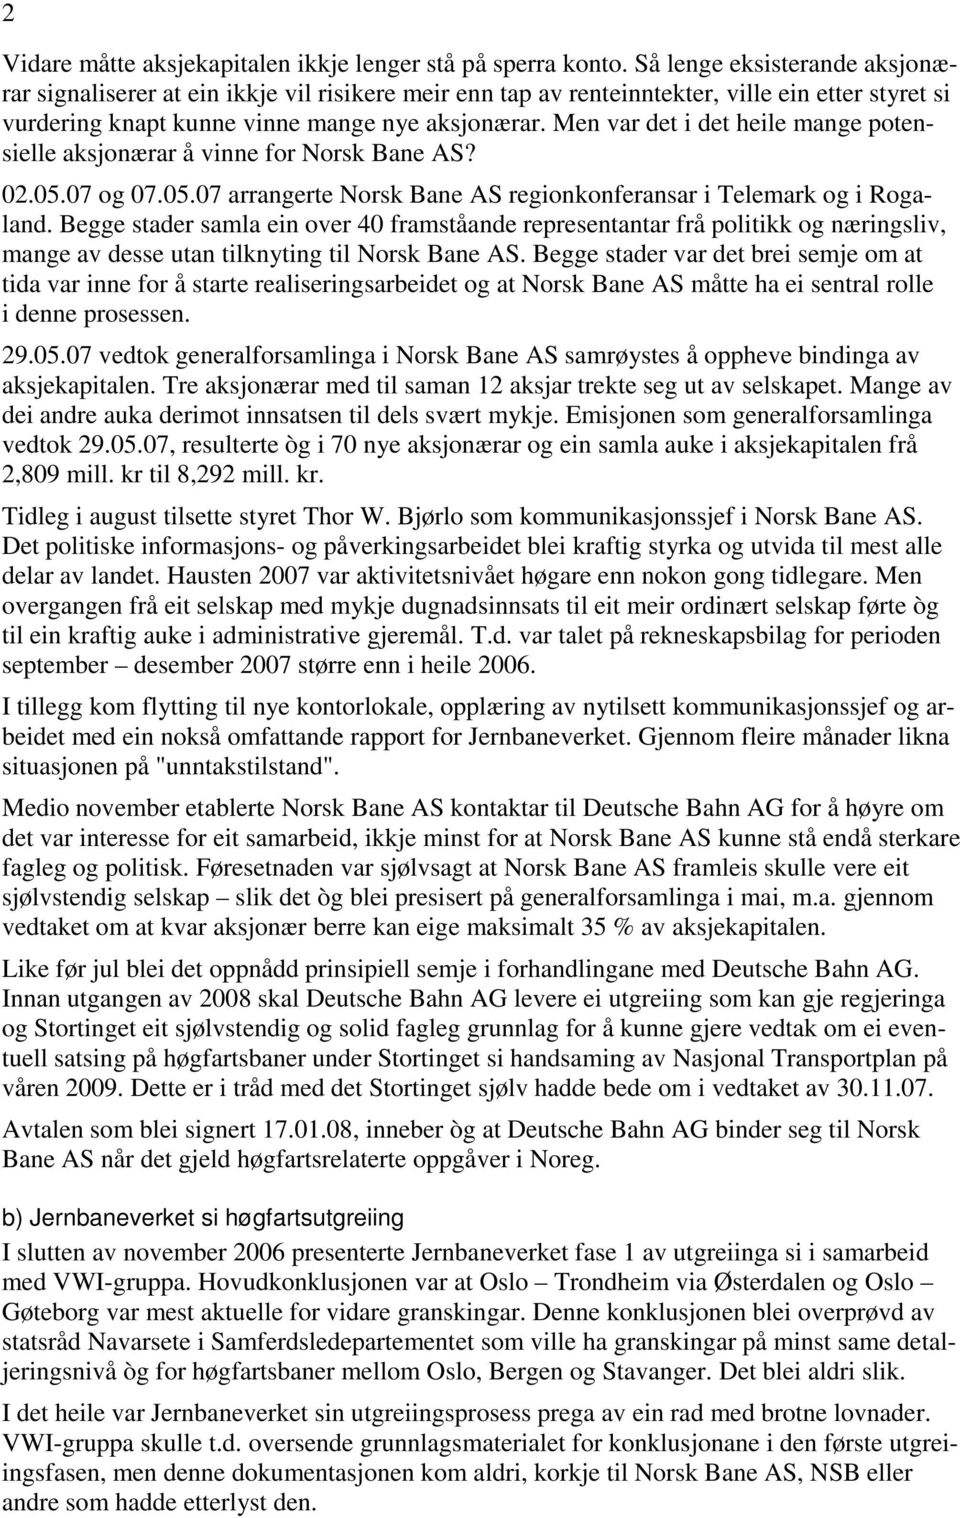 Men var det i det heile mange potensielle aksjonærar å vinne for Norsk Bane AS? 02.05.07 og 07.05.07 arrangerte Norsk Bane AS regionkonferansar i Telemark og i Rogaland.